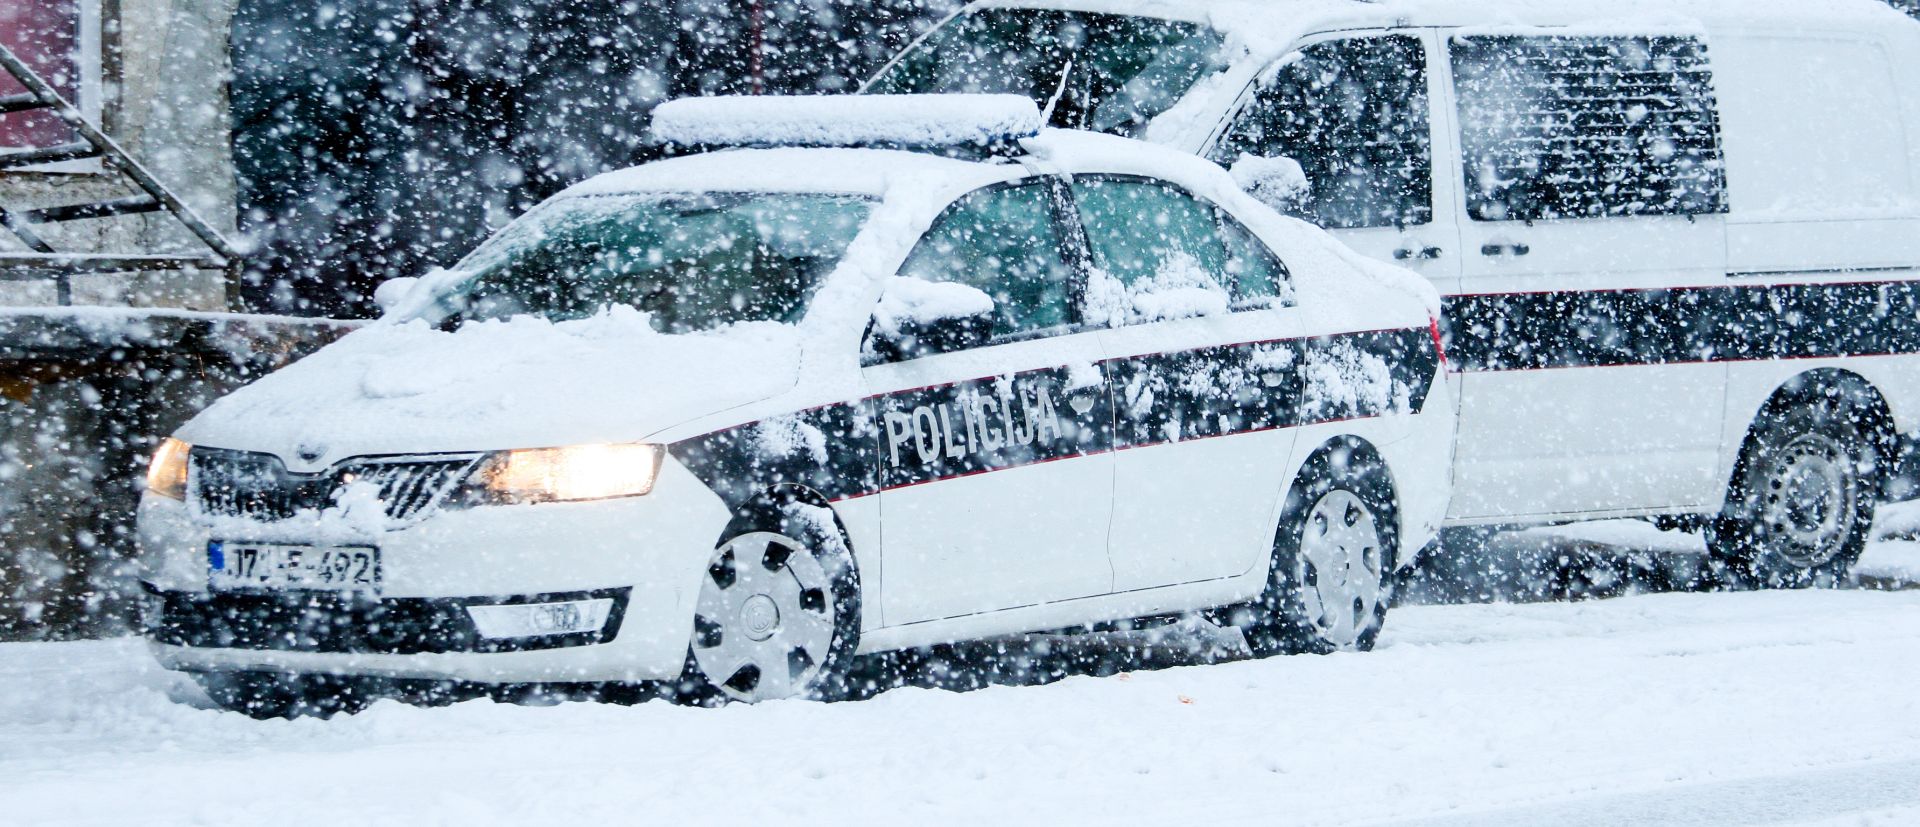 Policijska patrola s dugim cijevima na putu Sarajevo - Konjic 11.02.2019, Konjic, Bosna i Hercegovina - Policijska patrola s dugim cijevima na putu Sarajevo - Konjic. Photo: Armin Durgut/PIXSELL